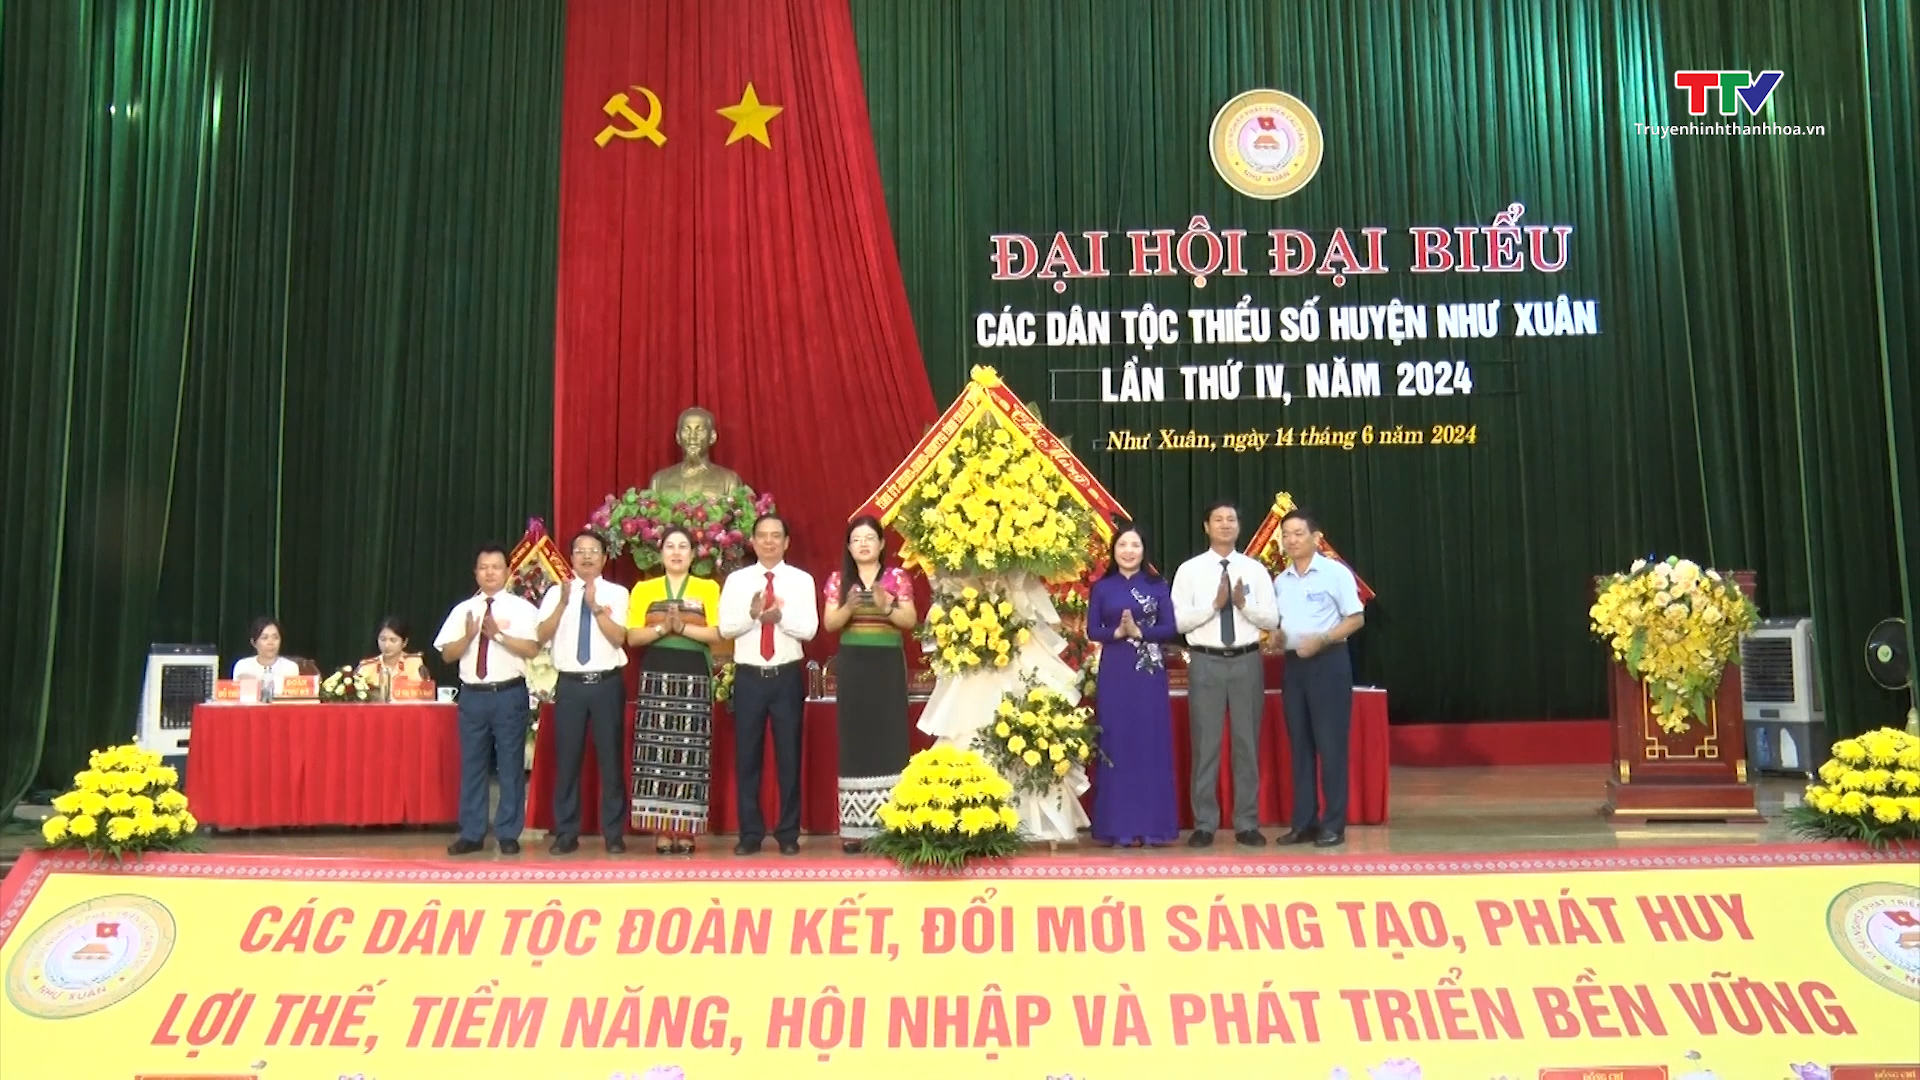 Đại hội đại biểu các dân tộc thiểu số huyện Như Xuân lần thứ IV, năm 2024- Ảnh 2.